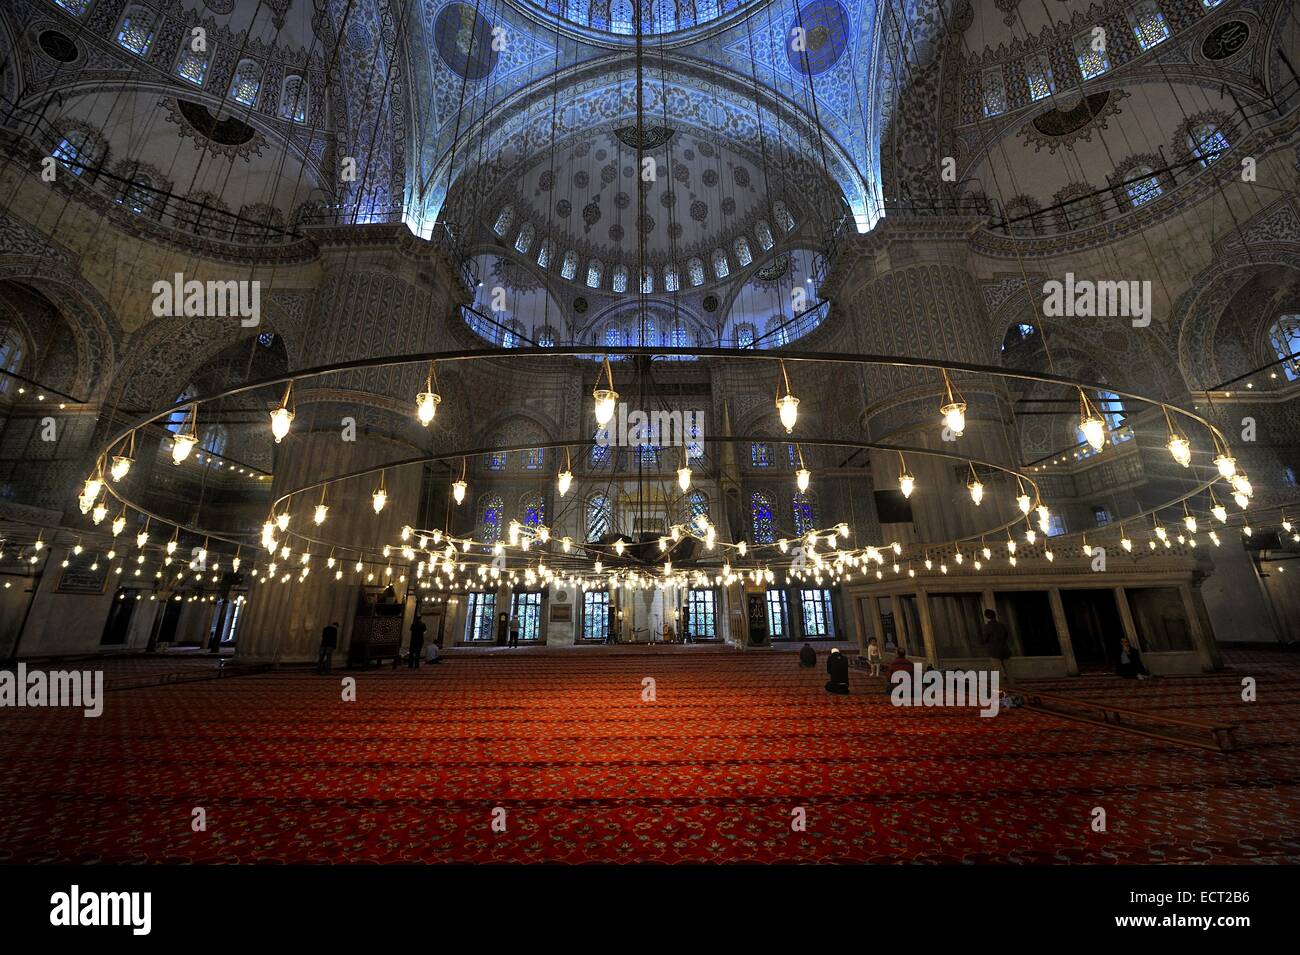 Salle de prière avec tapis rouge, Mosquée Sultan Ahmed, Sultanahmet, Istanbul, Turquie Banque D'Images